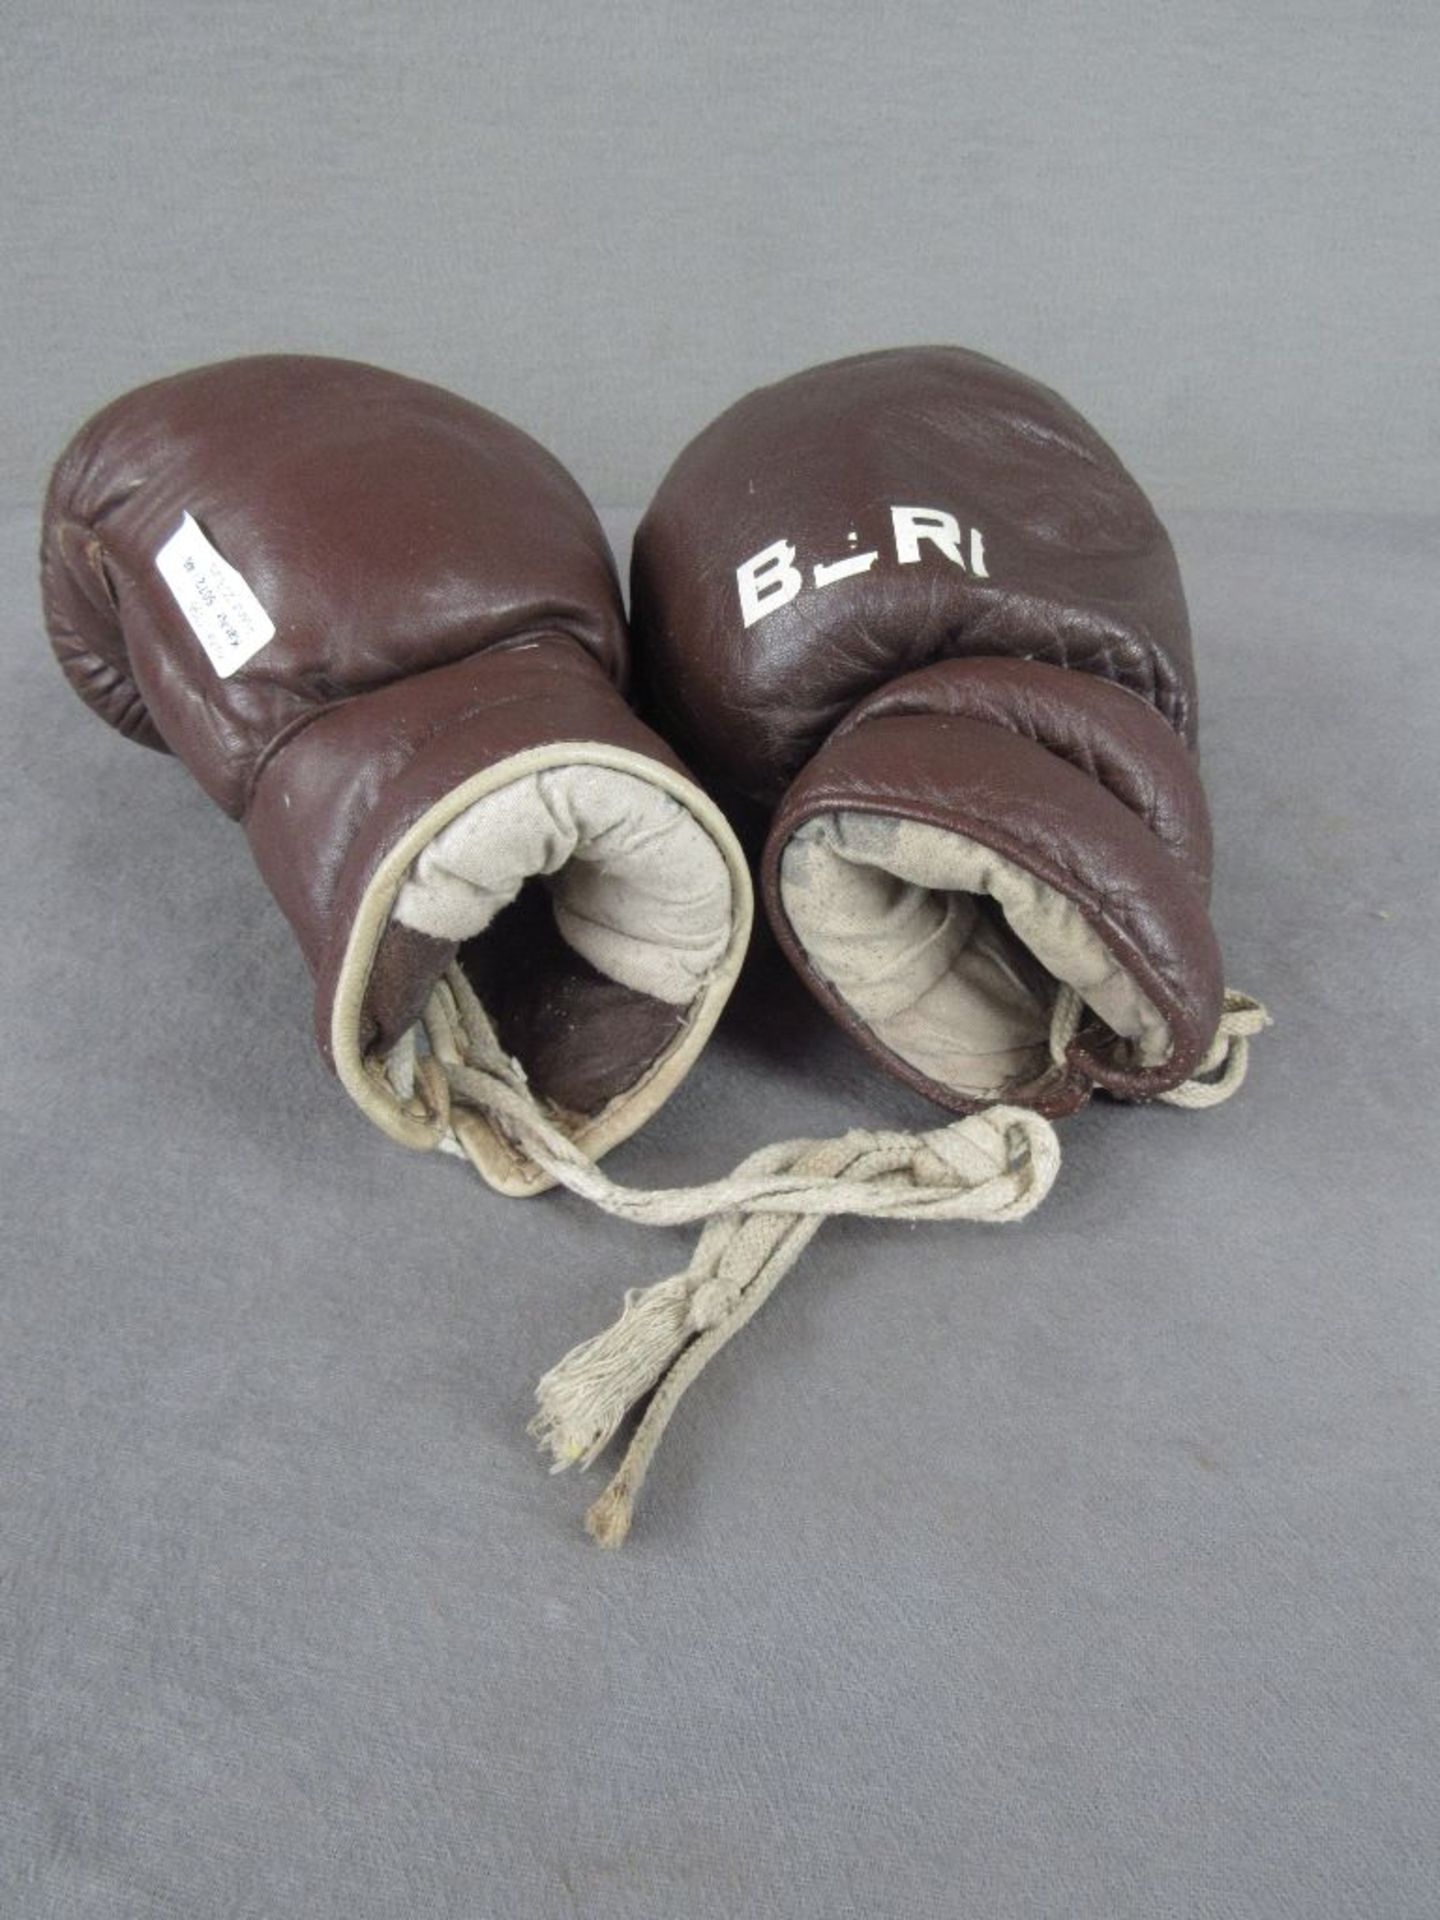 Vintage lederne Boxhandschuhe - Bild 4 aus 4